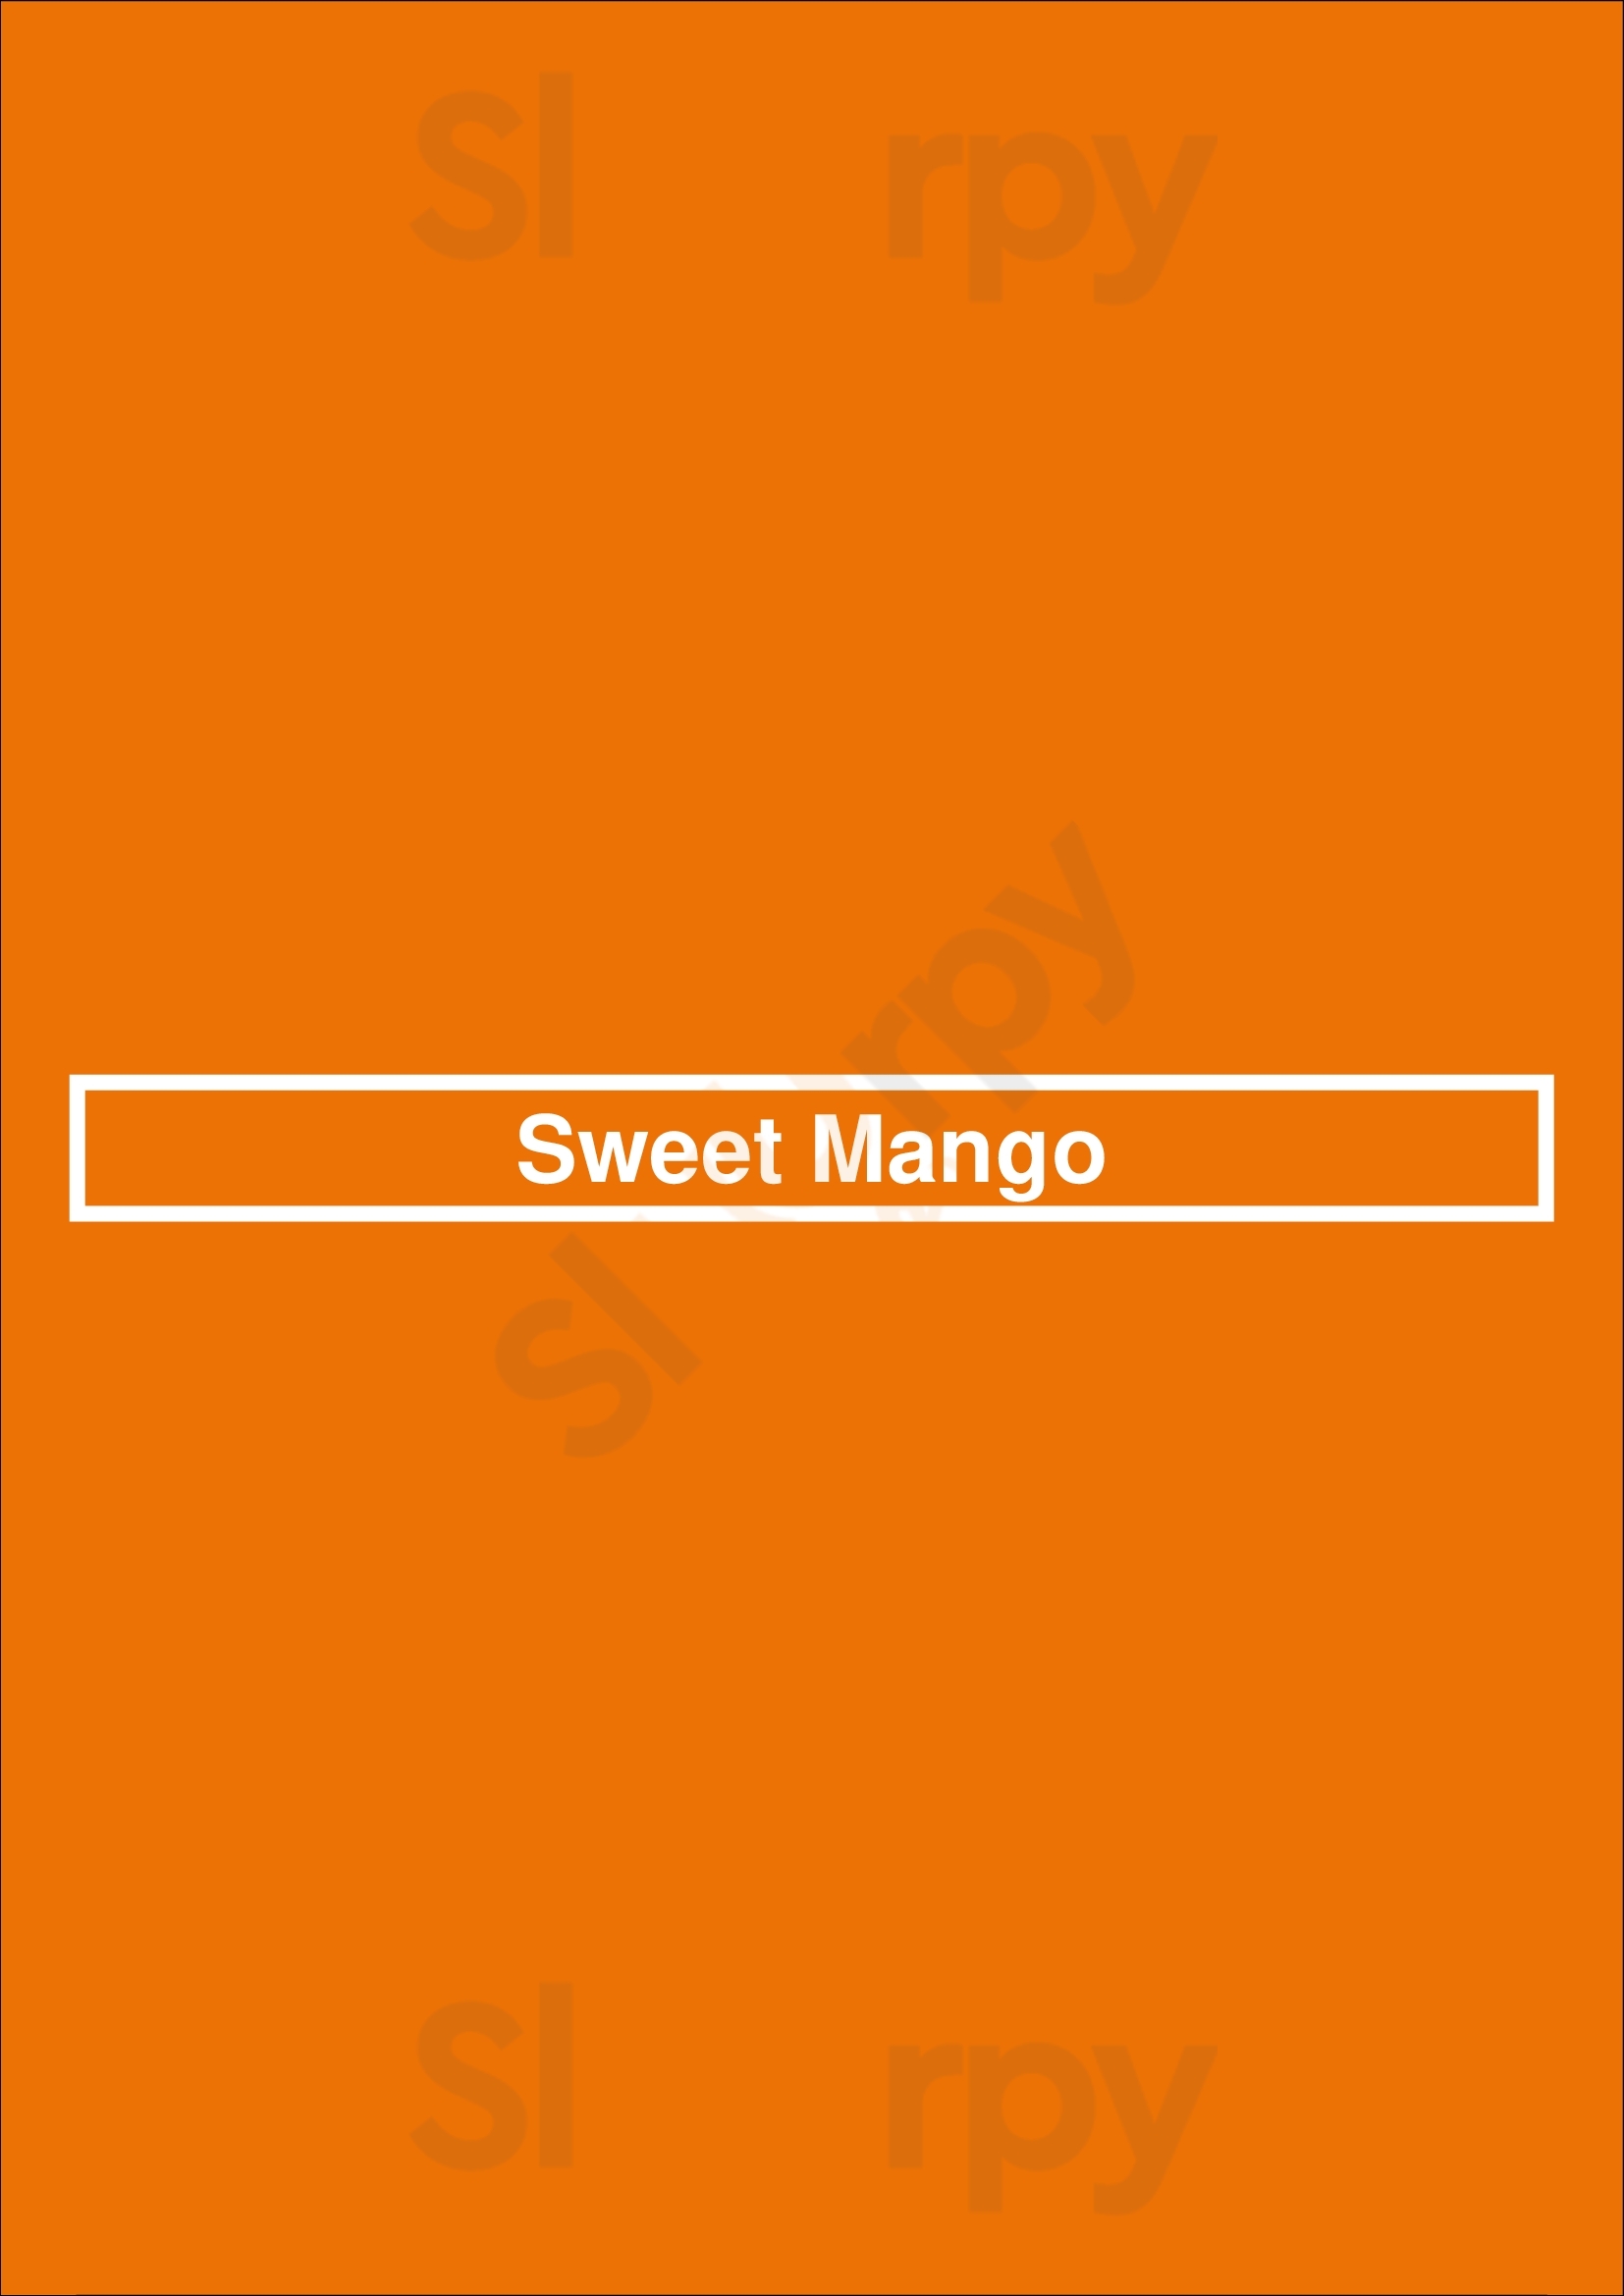 Sweet Mango San Jose Menu - 1